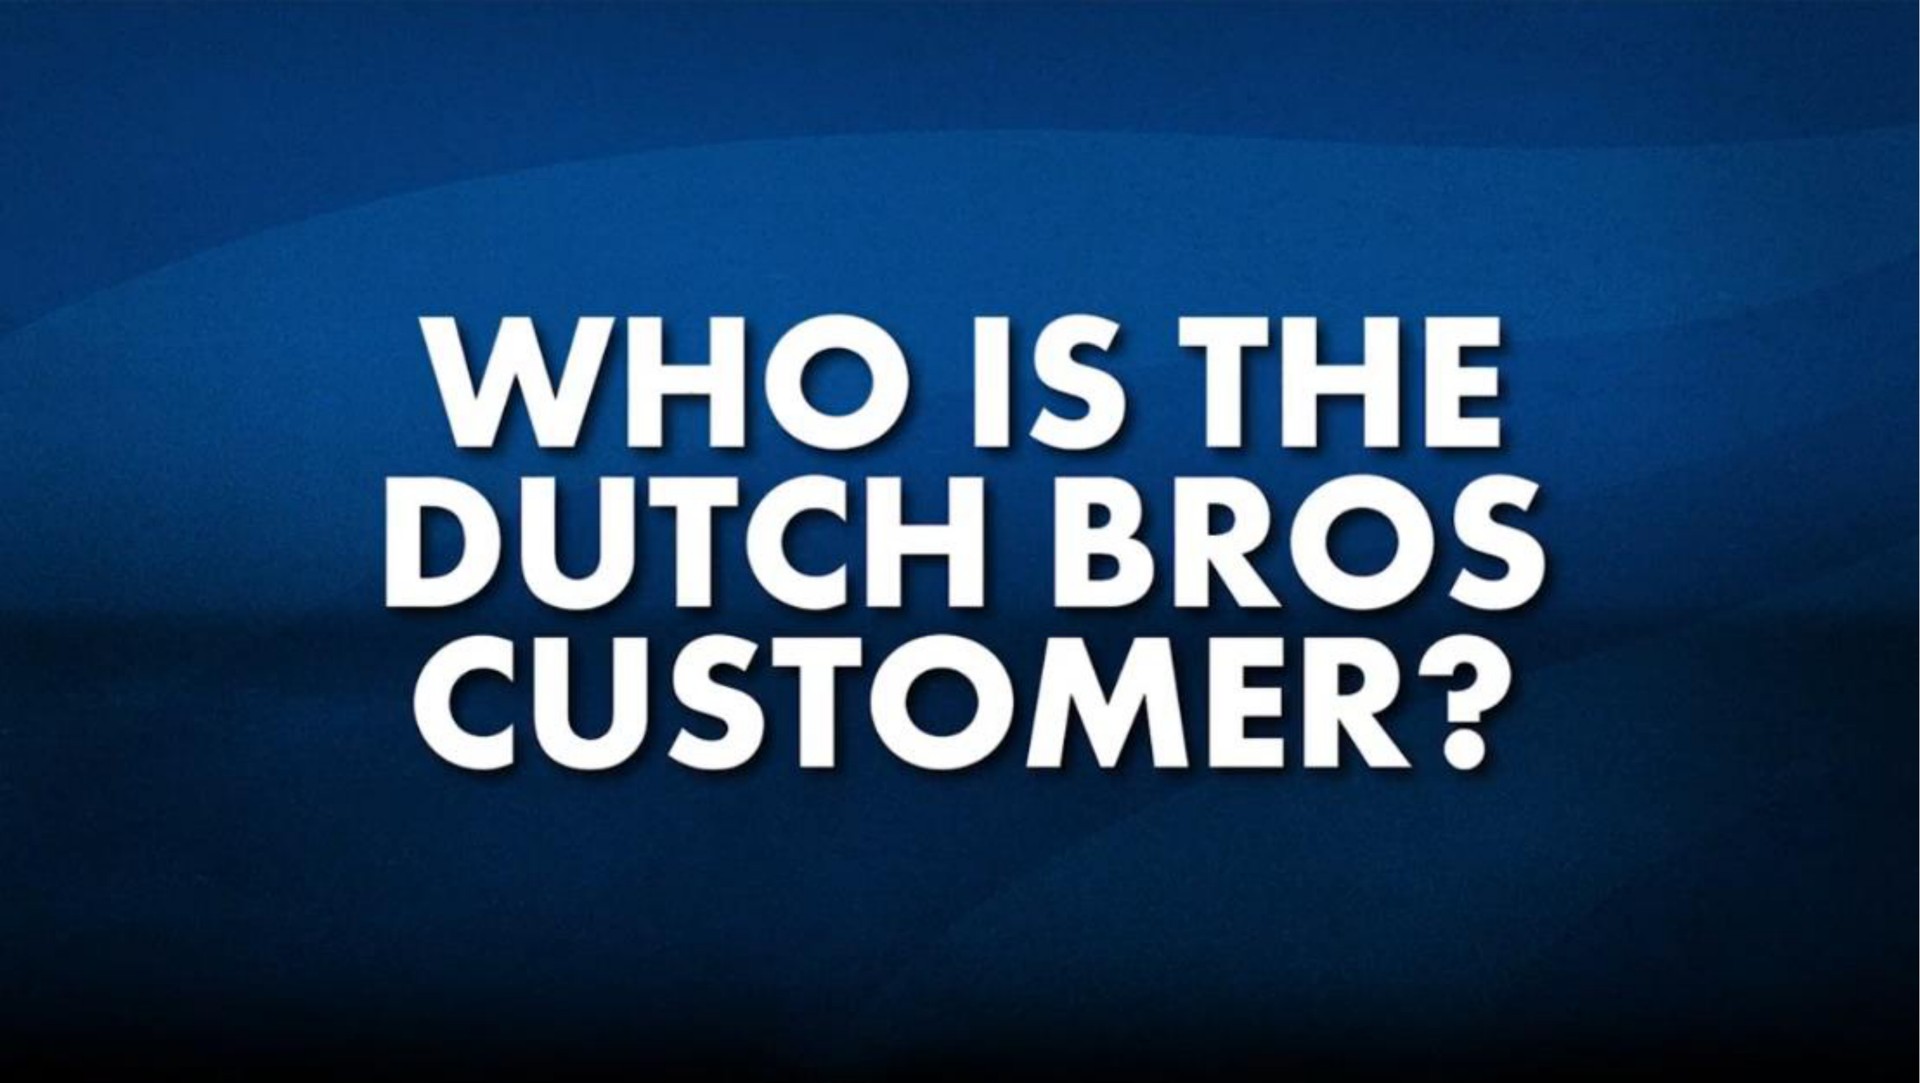 the dutch customer | Dutch Bros